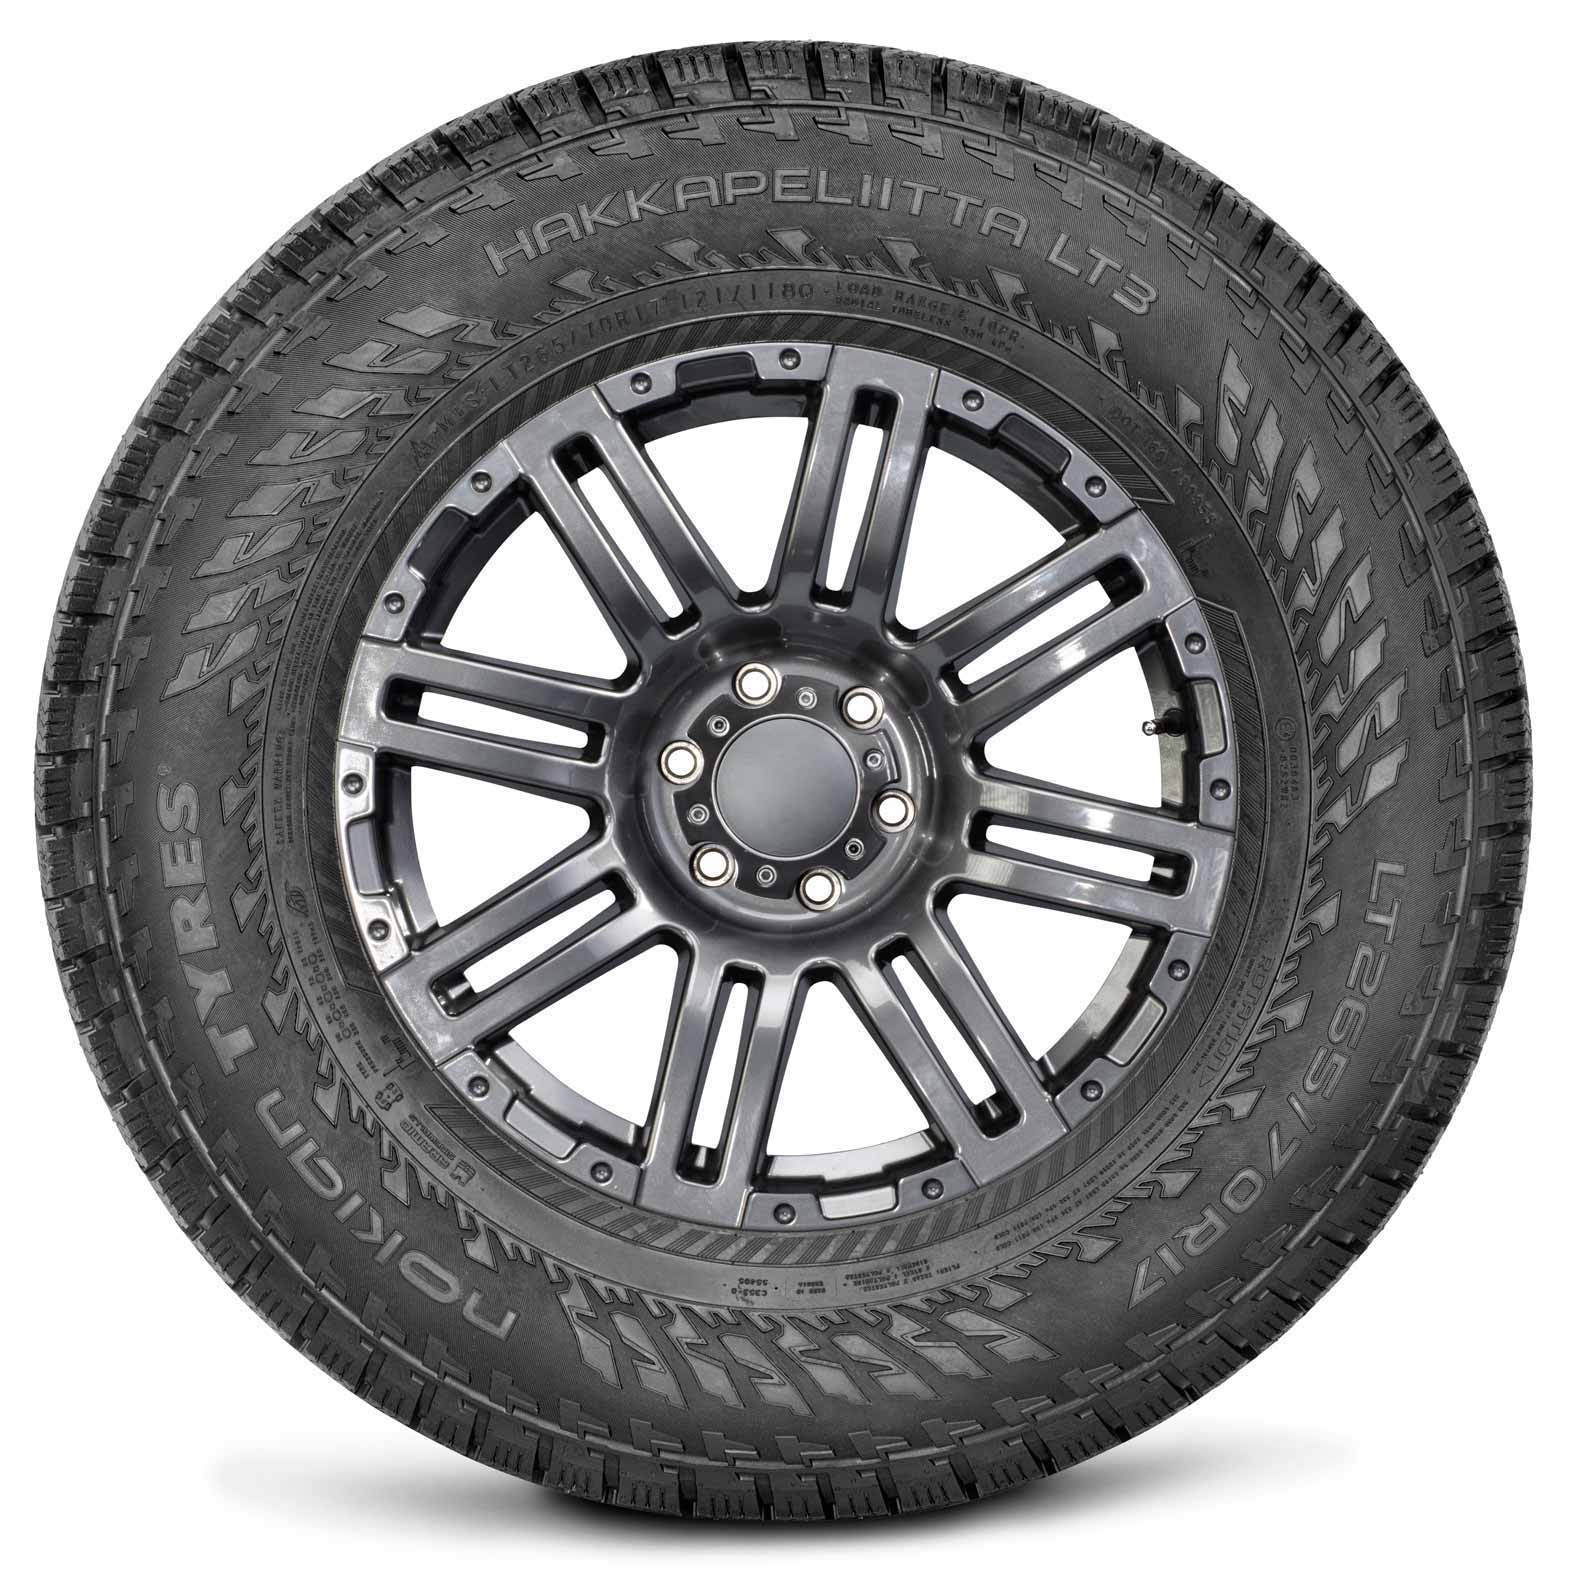 Nokian Hakkapeliitta LT3 studded Tires for Winter | Kal Tire